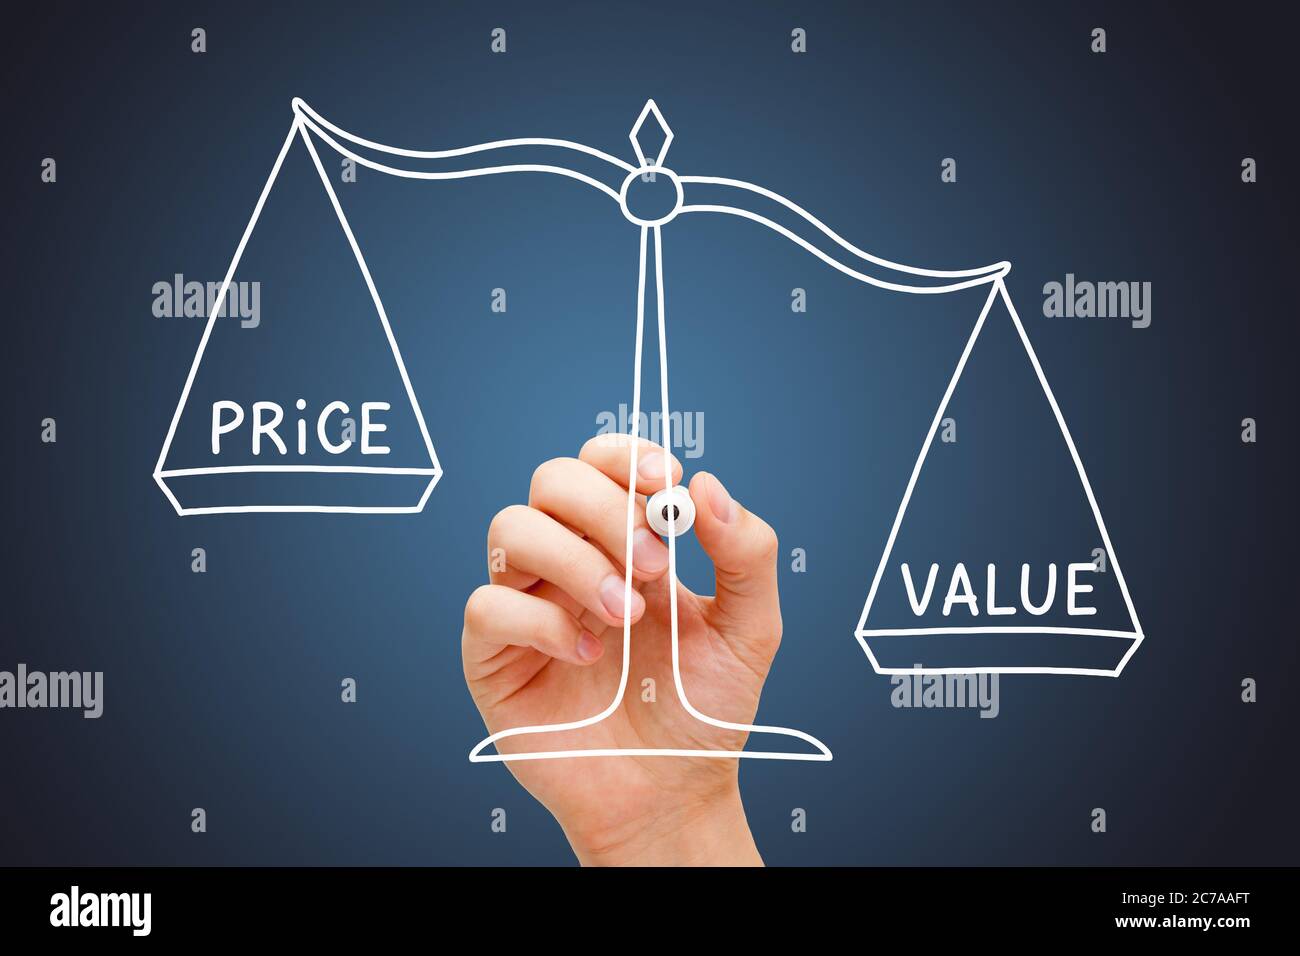 Handzeichnung Value Price Scale Business-Konzept mit weißem Marker auf transparentem Wipe Board auf dunkelblauem Hintergrund. Großes Preis-Leistungs-Verhältnis, kleiner Preis. Stockfoto